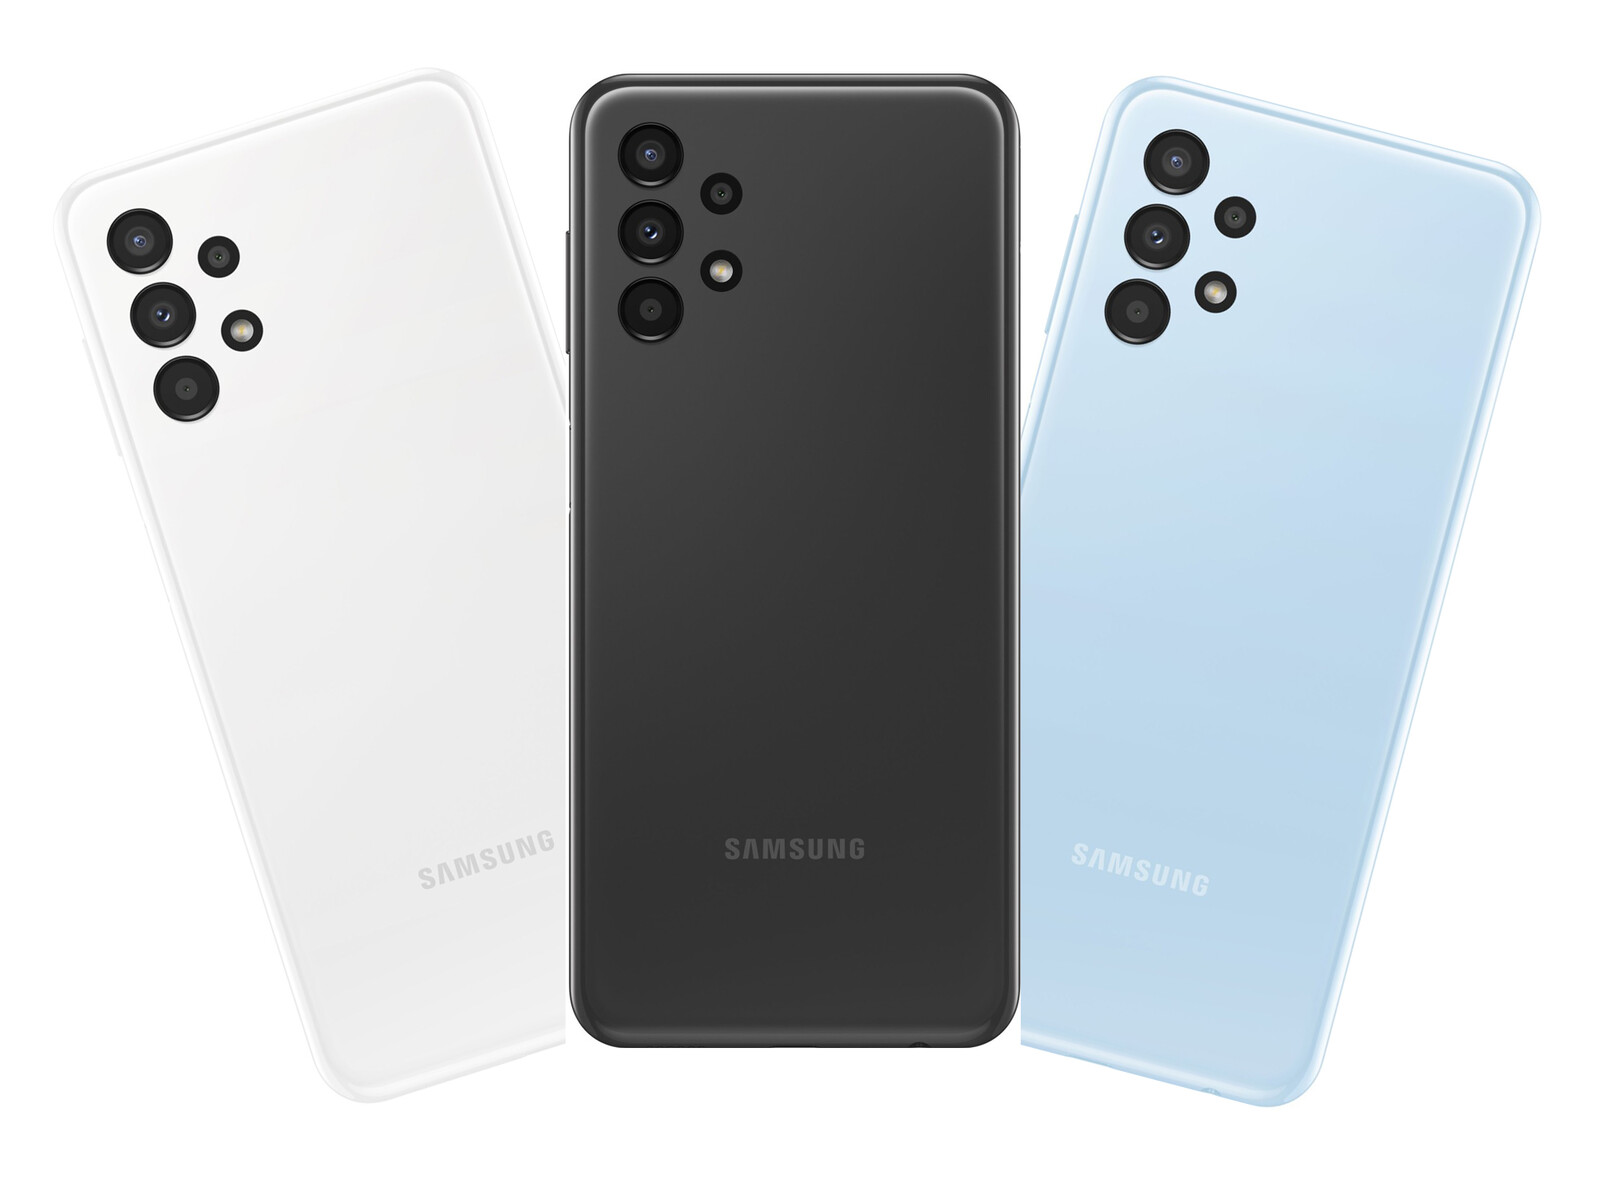 Samsung Galaxy A Series là một sản phẩm đáng tin cậy và giá cả phải chăng mà bạn không thể bỏ lỡ. Hãy xem hình ảnh chi tiết của điện thoại này để cảm nhận sự hòa quyện giữa thiết kế đẹp mắt và các tính năng đáng giá của sản phẩm. Sử dụng Samsung Galaxy A Series để trải nghiệm những tính năng cao cấp vượt trội mà không cần mất quá nhiều chi phí.